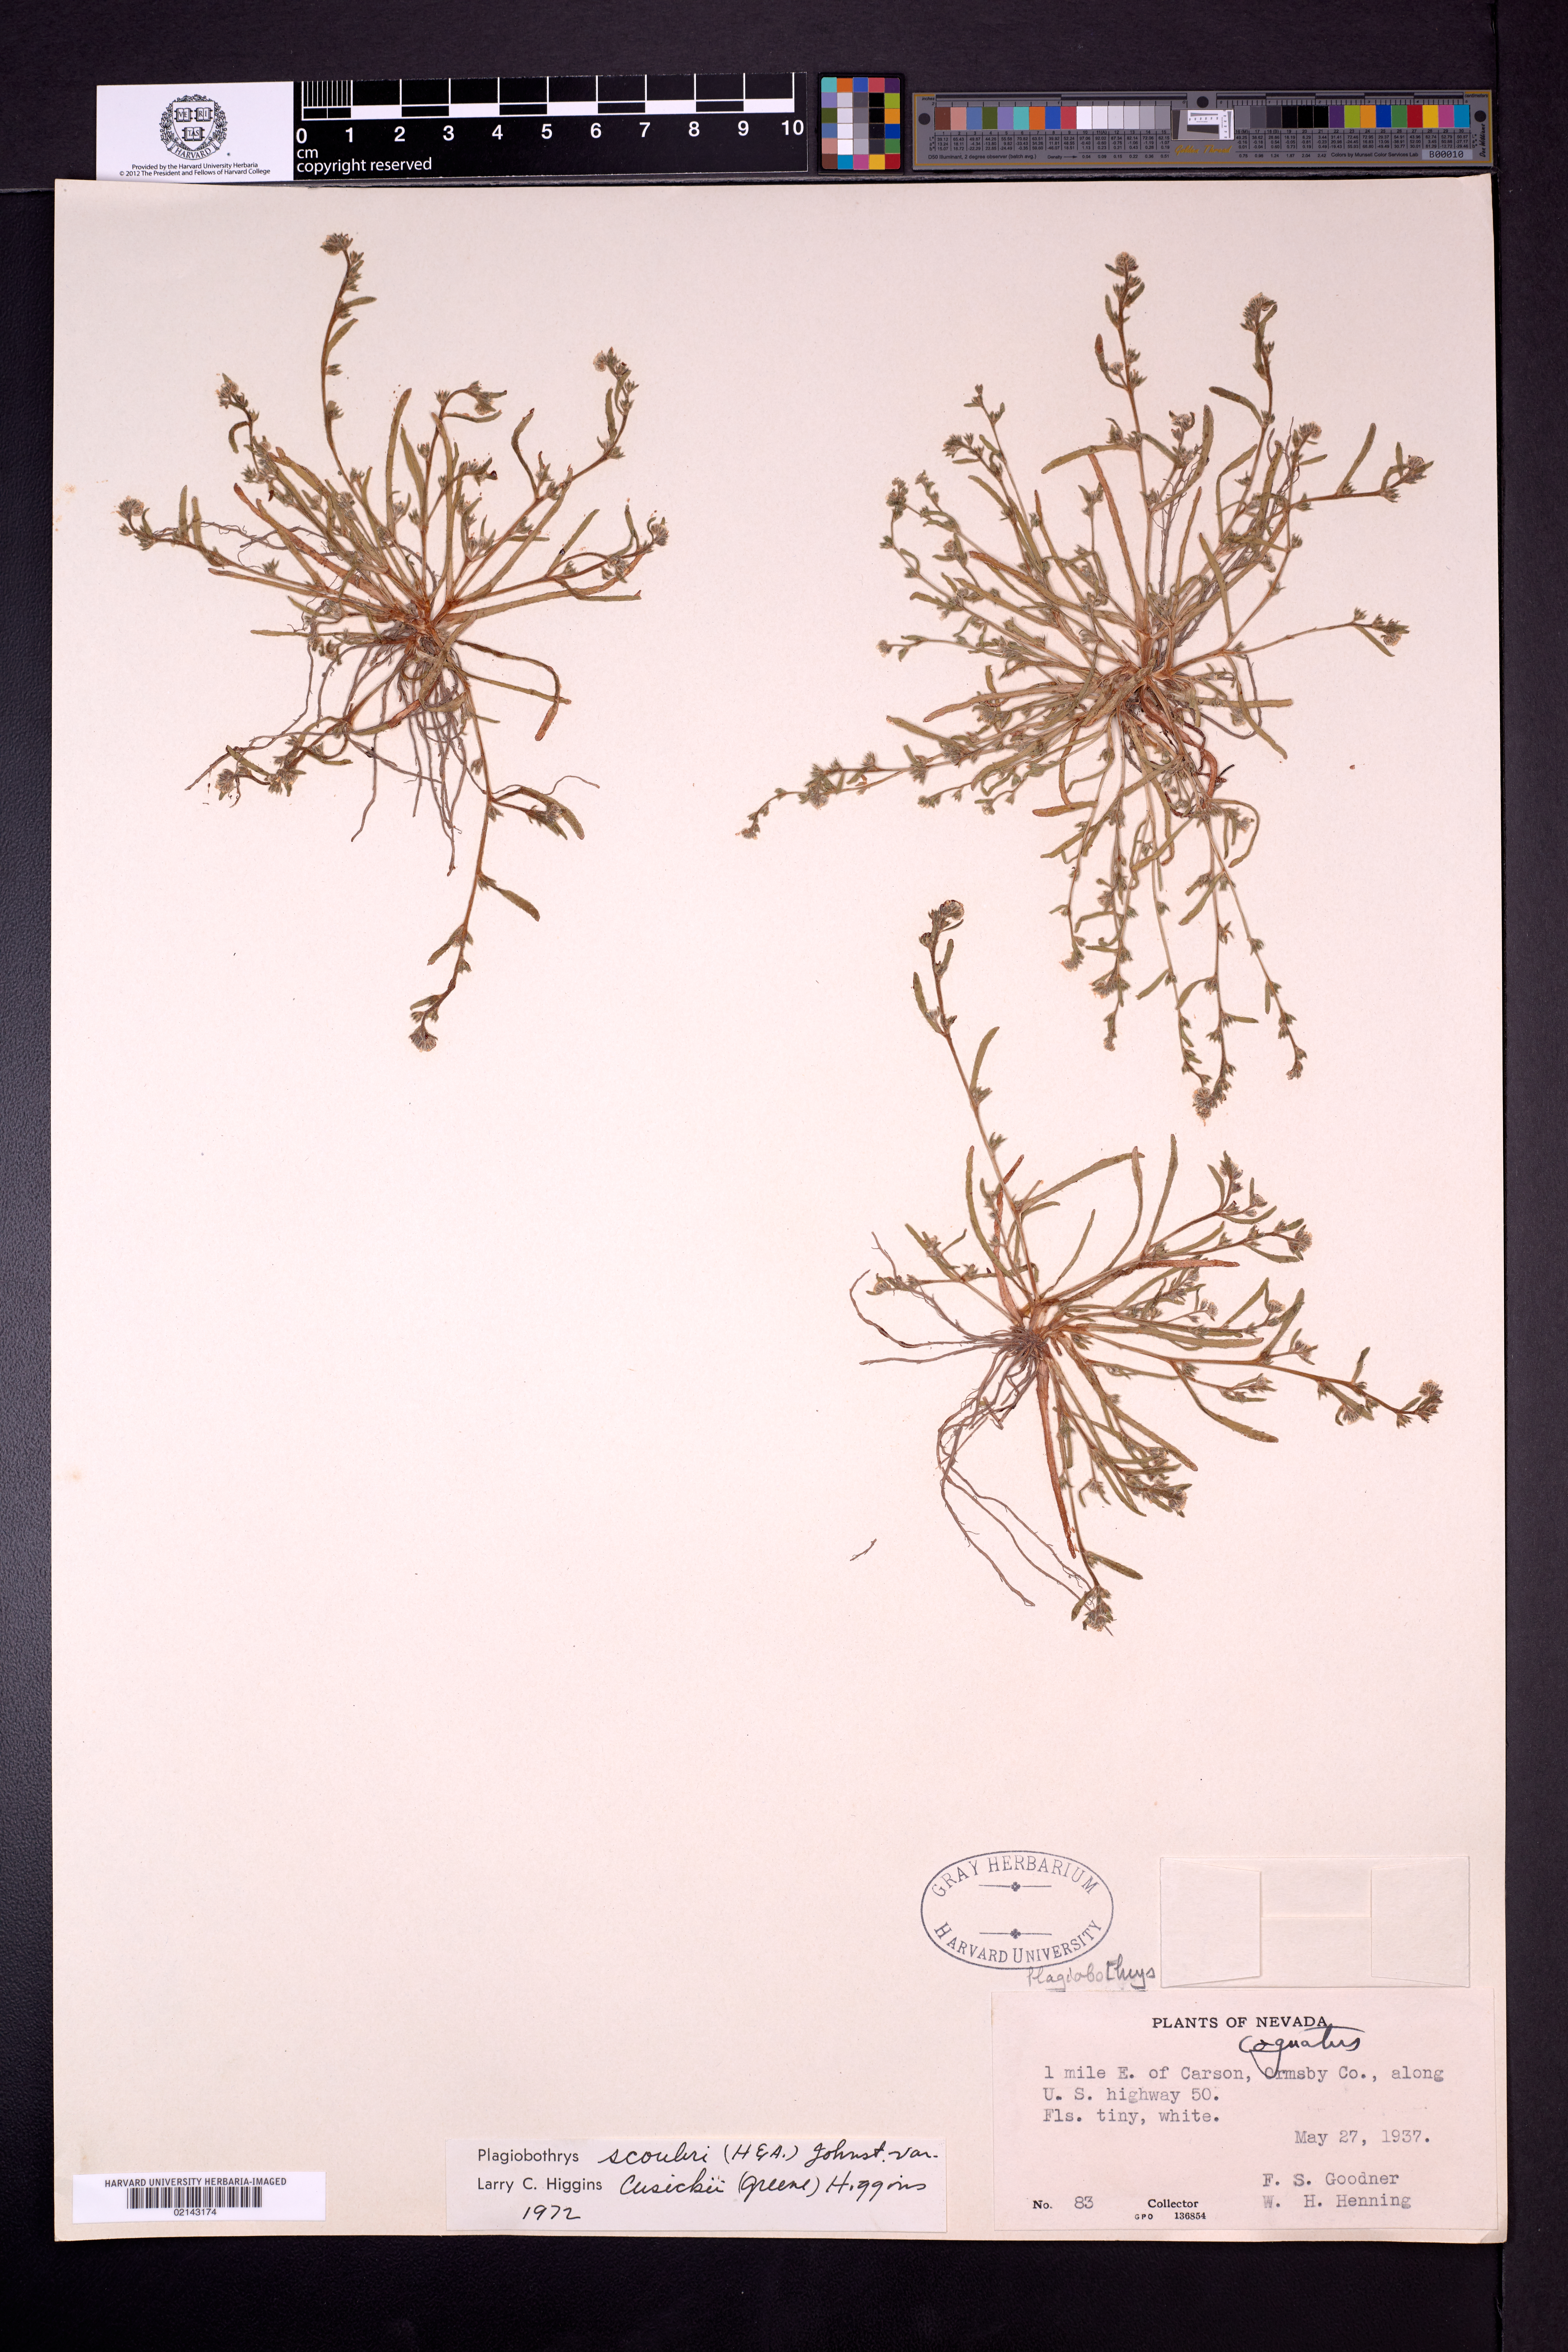 Plagiobothrys scouleri var. cusickii image